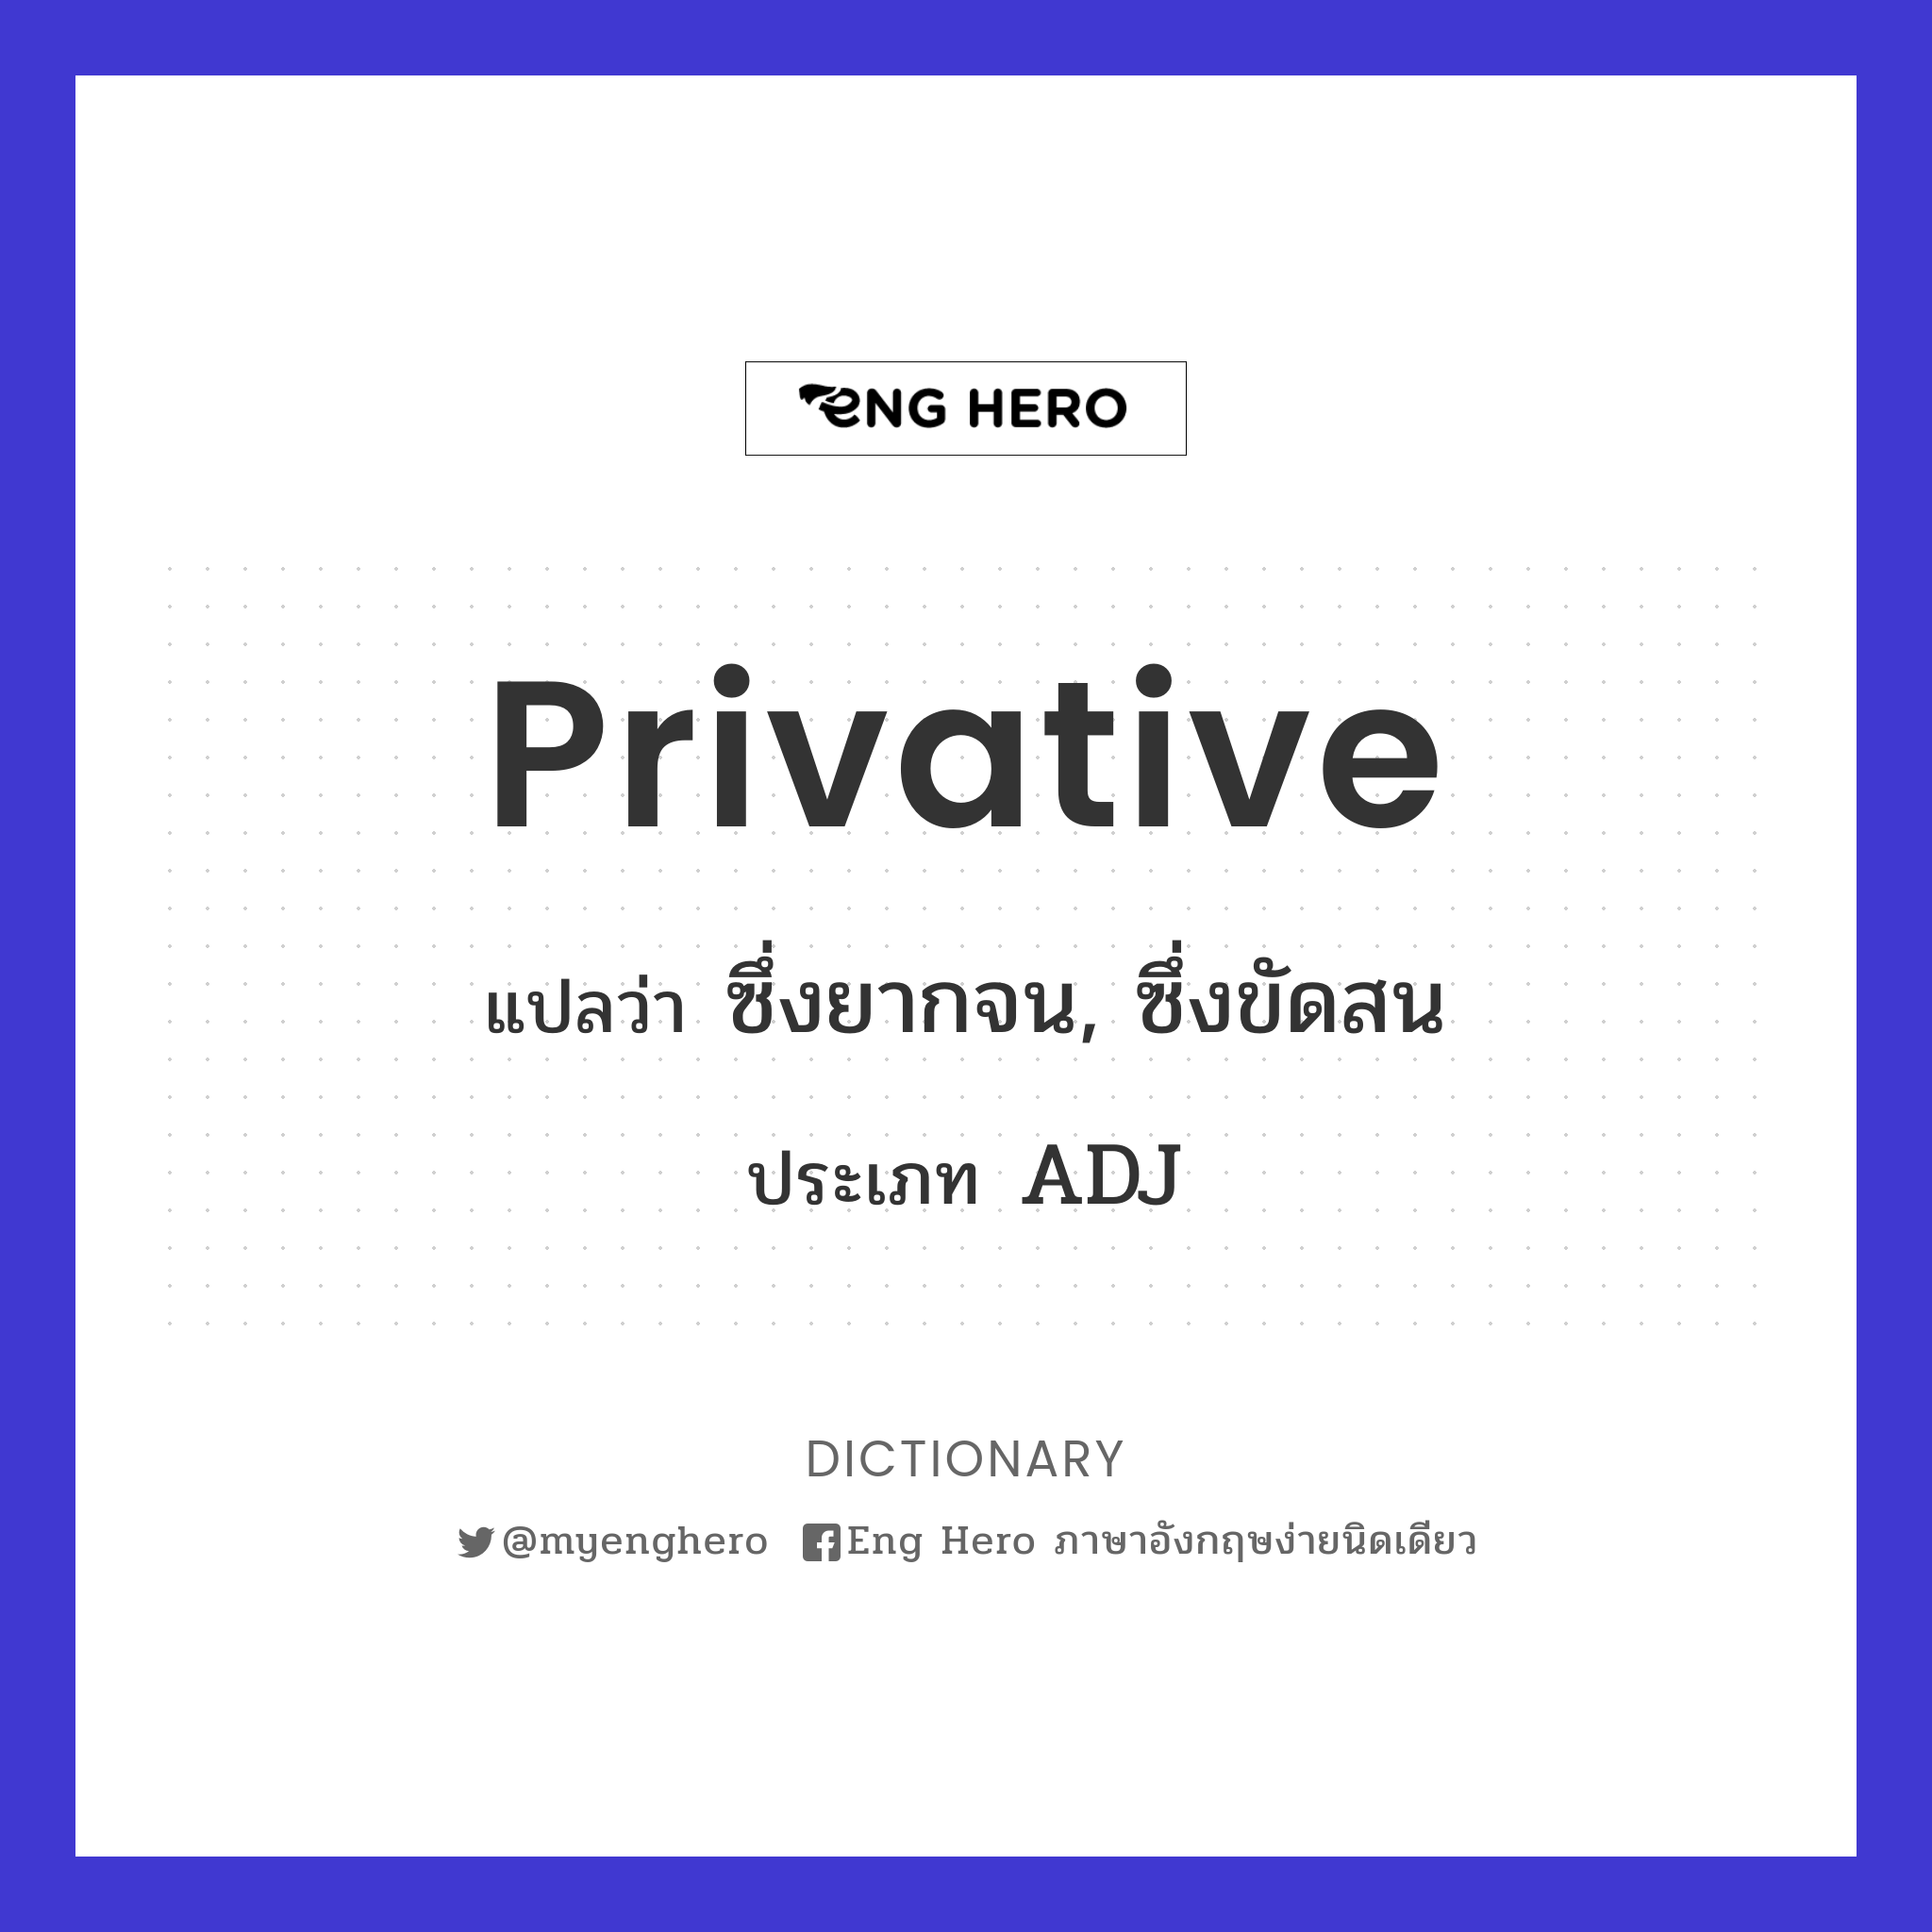 privative